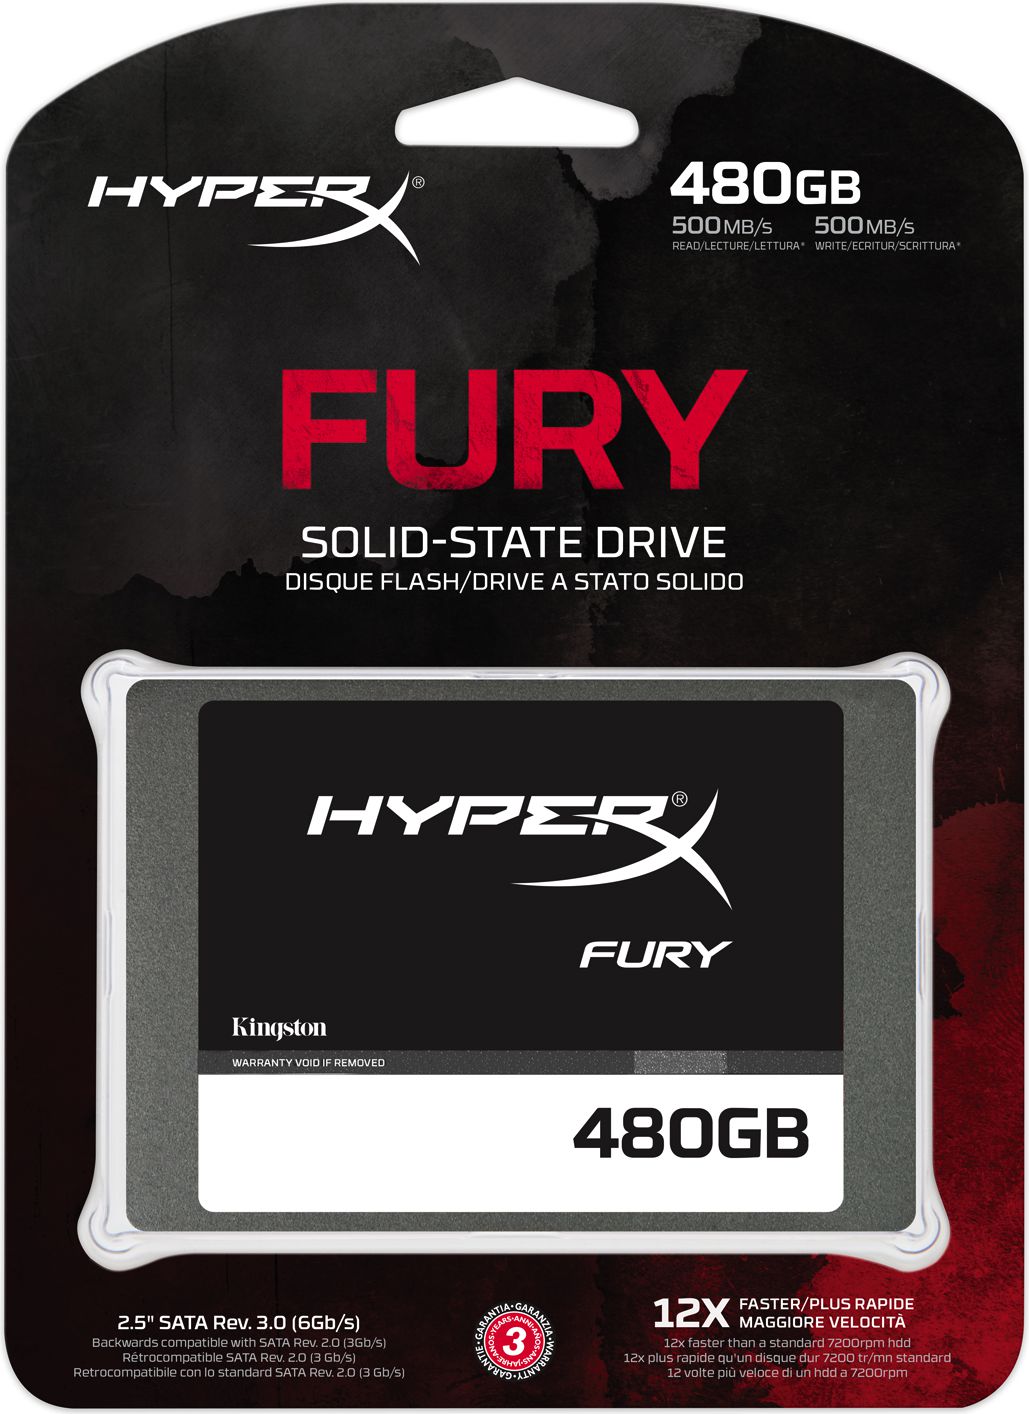 Dysk SSD 480GB HyperX Fury za 459zł